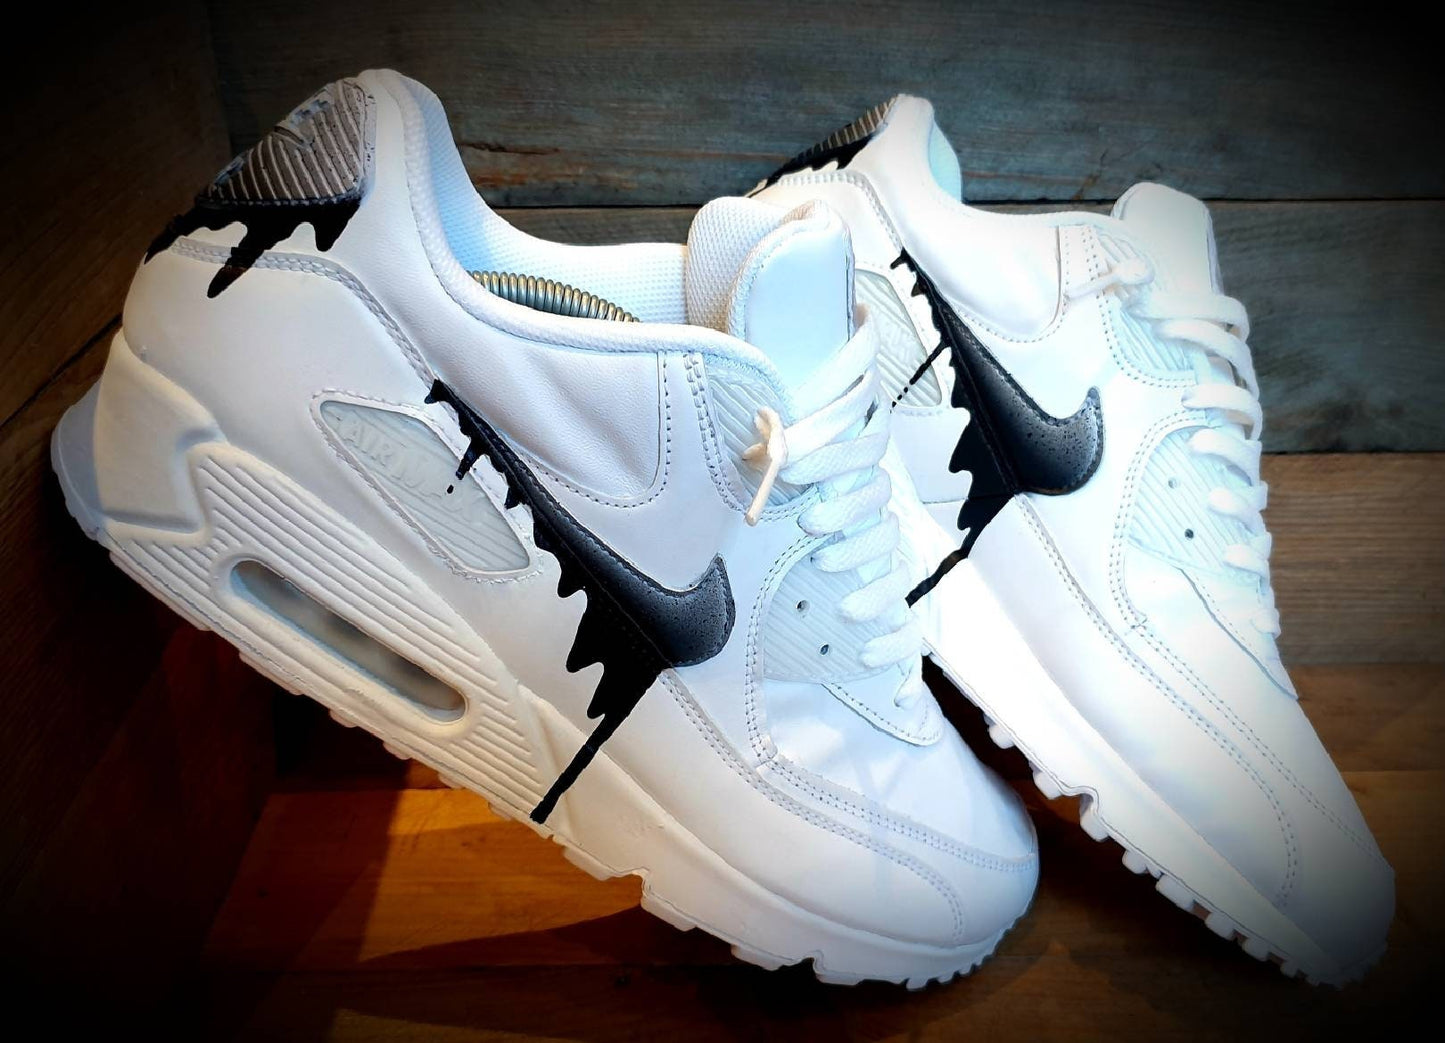 Custom Painted Air Max 90/Sneakers/Shoes/Kicks/Premium/Personalised/Speckled Drip-Black